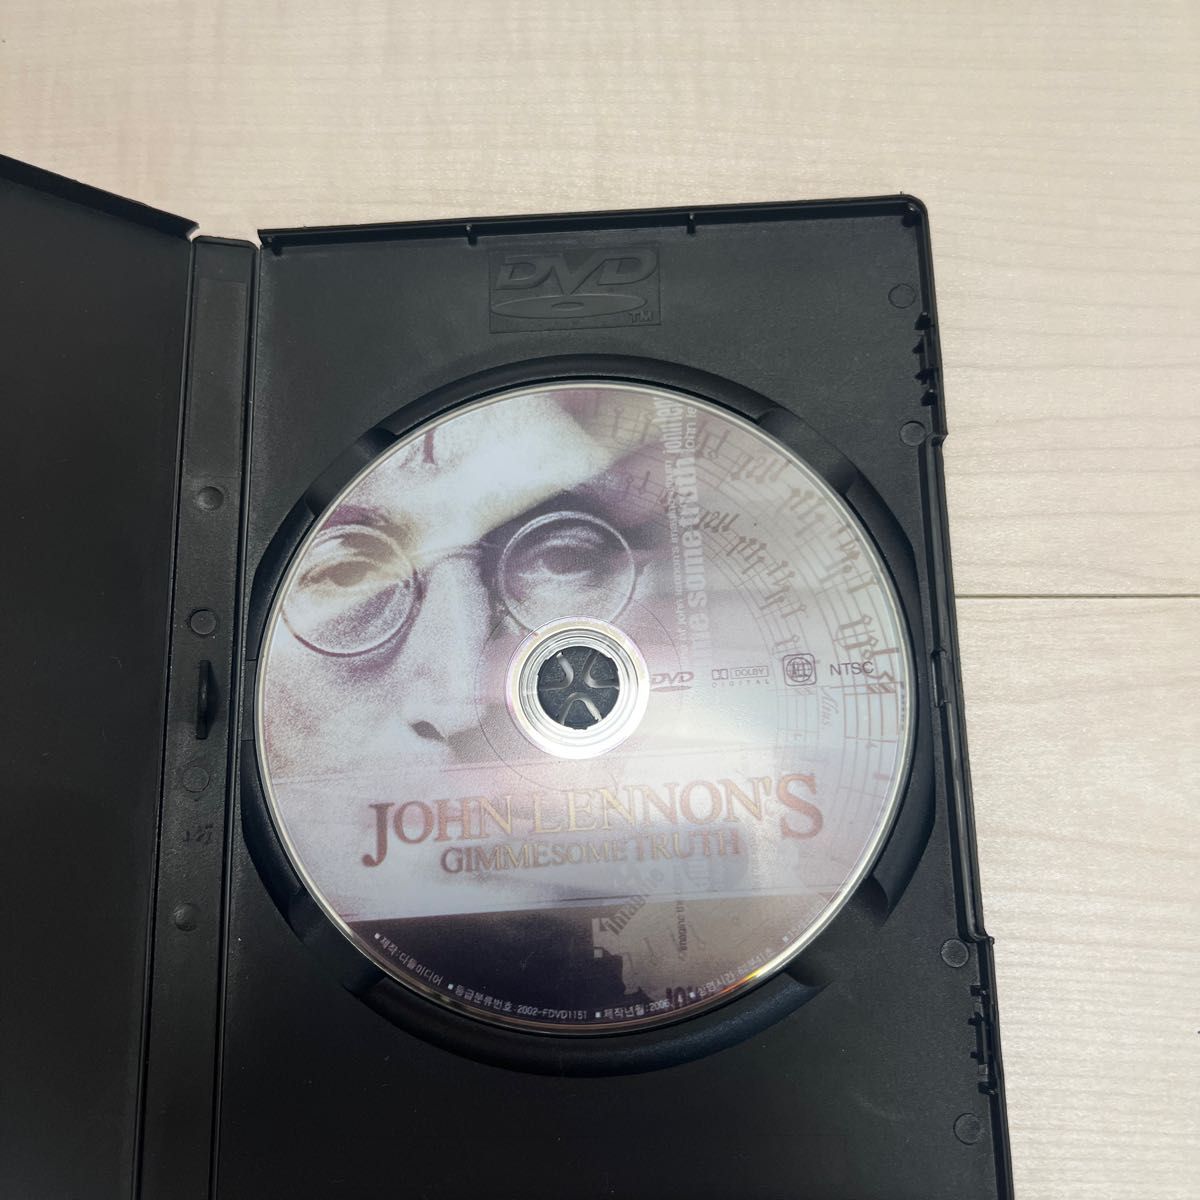   JOHN LENNON 'S  DVD